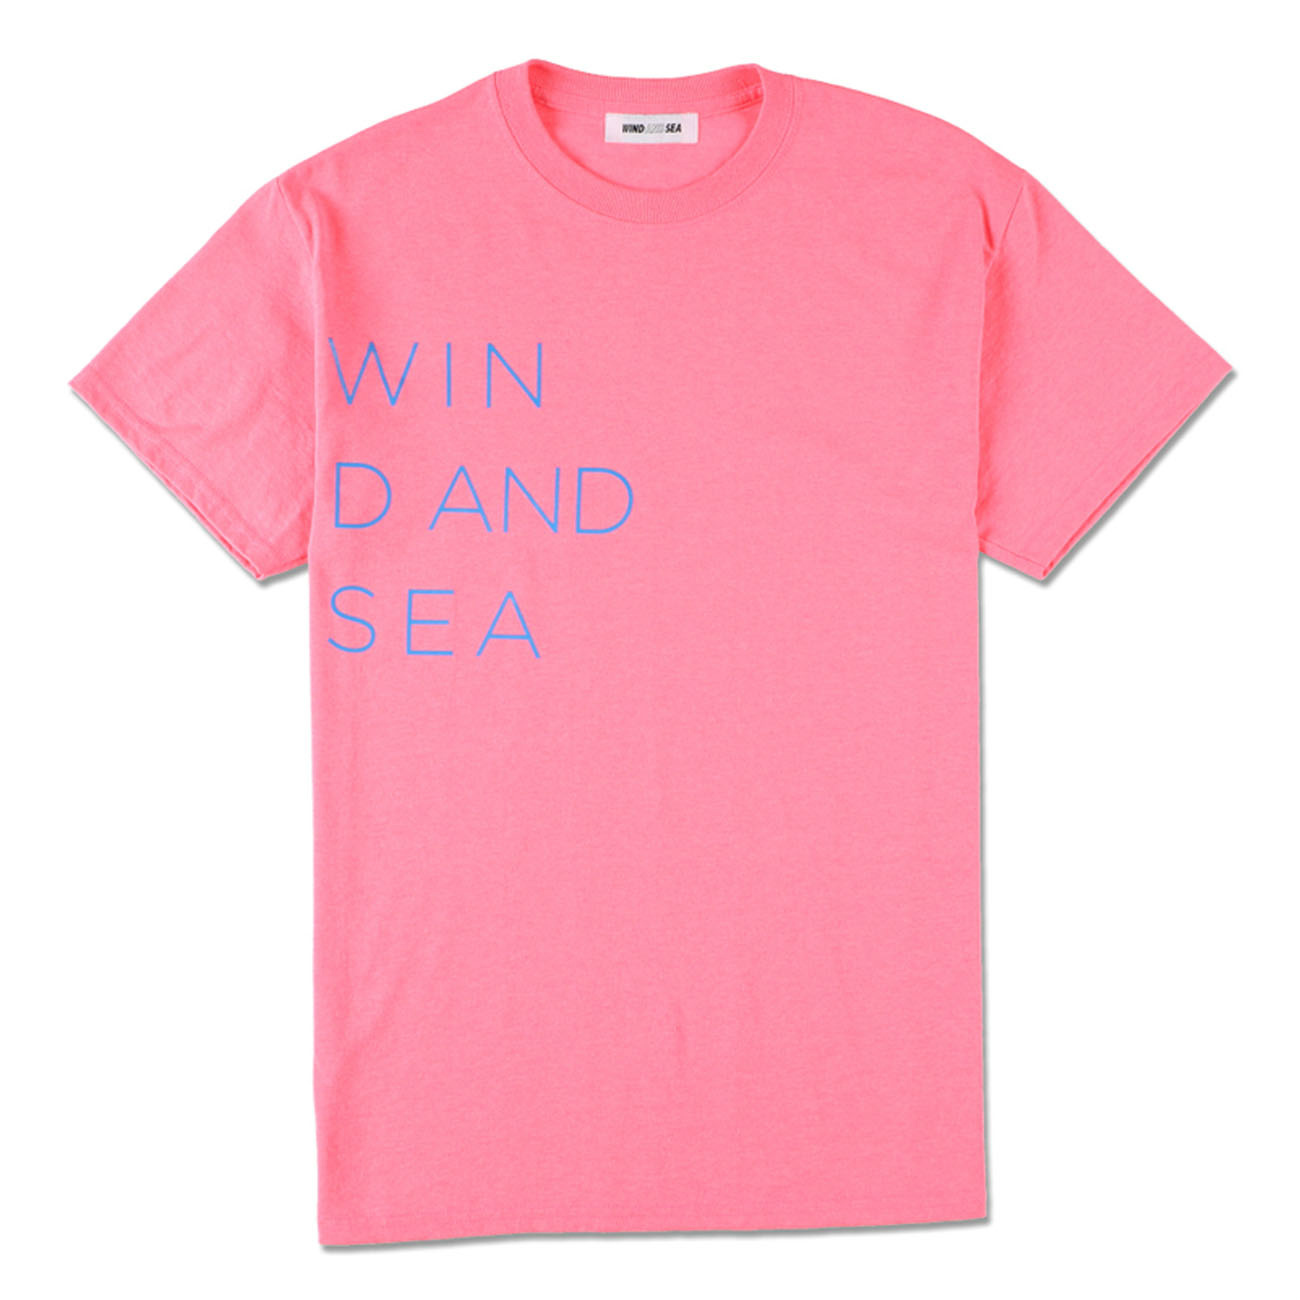 WIND AND SEA(ウィンダンシー) ロゴTシャツ ピンクウィンダンシー - T ...